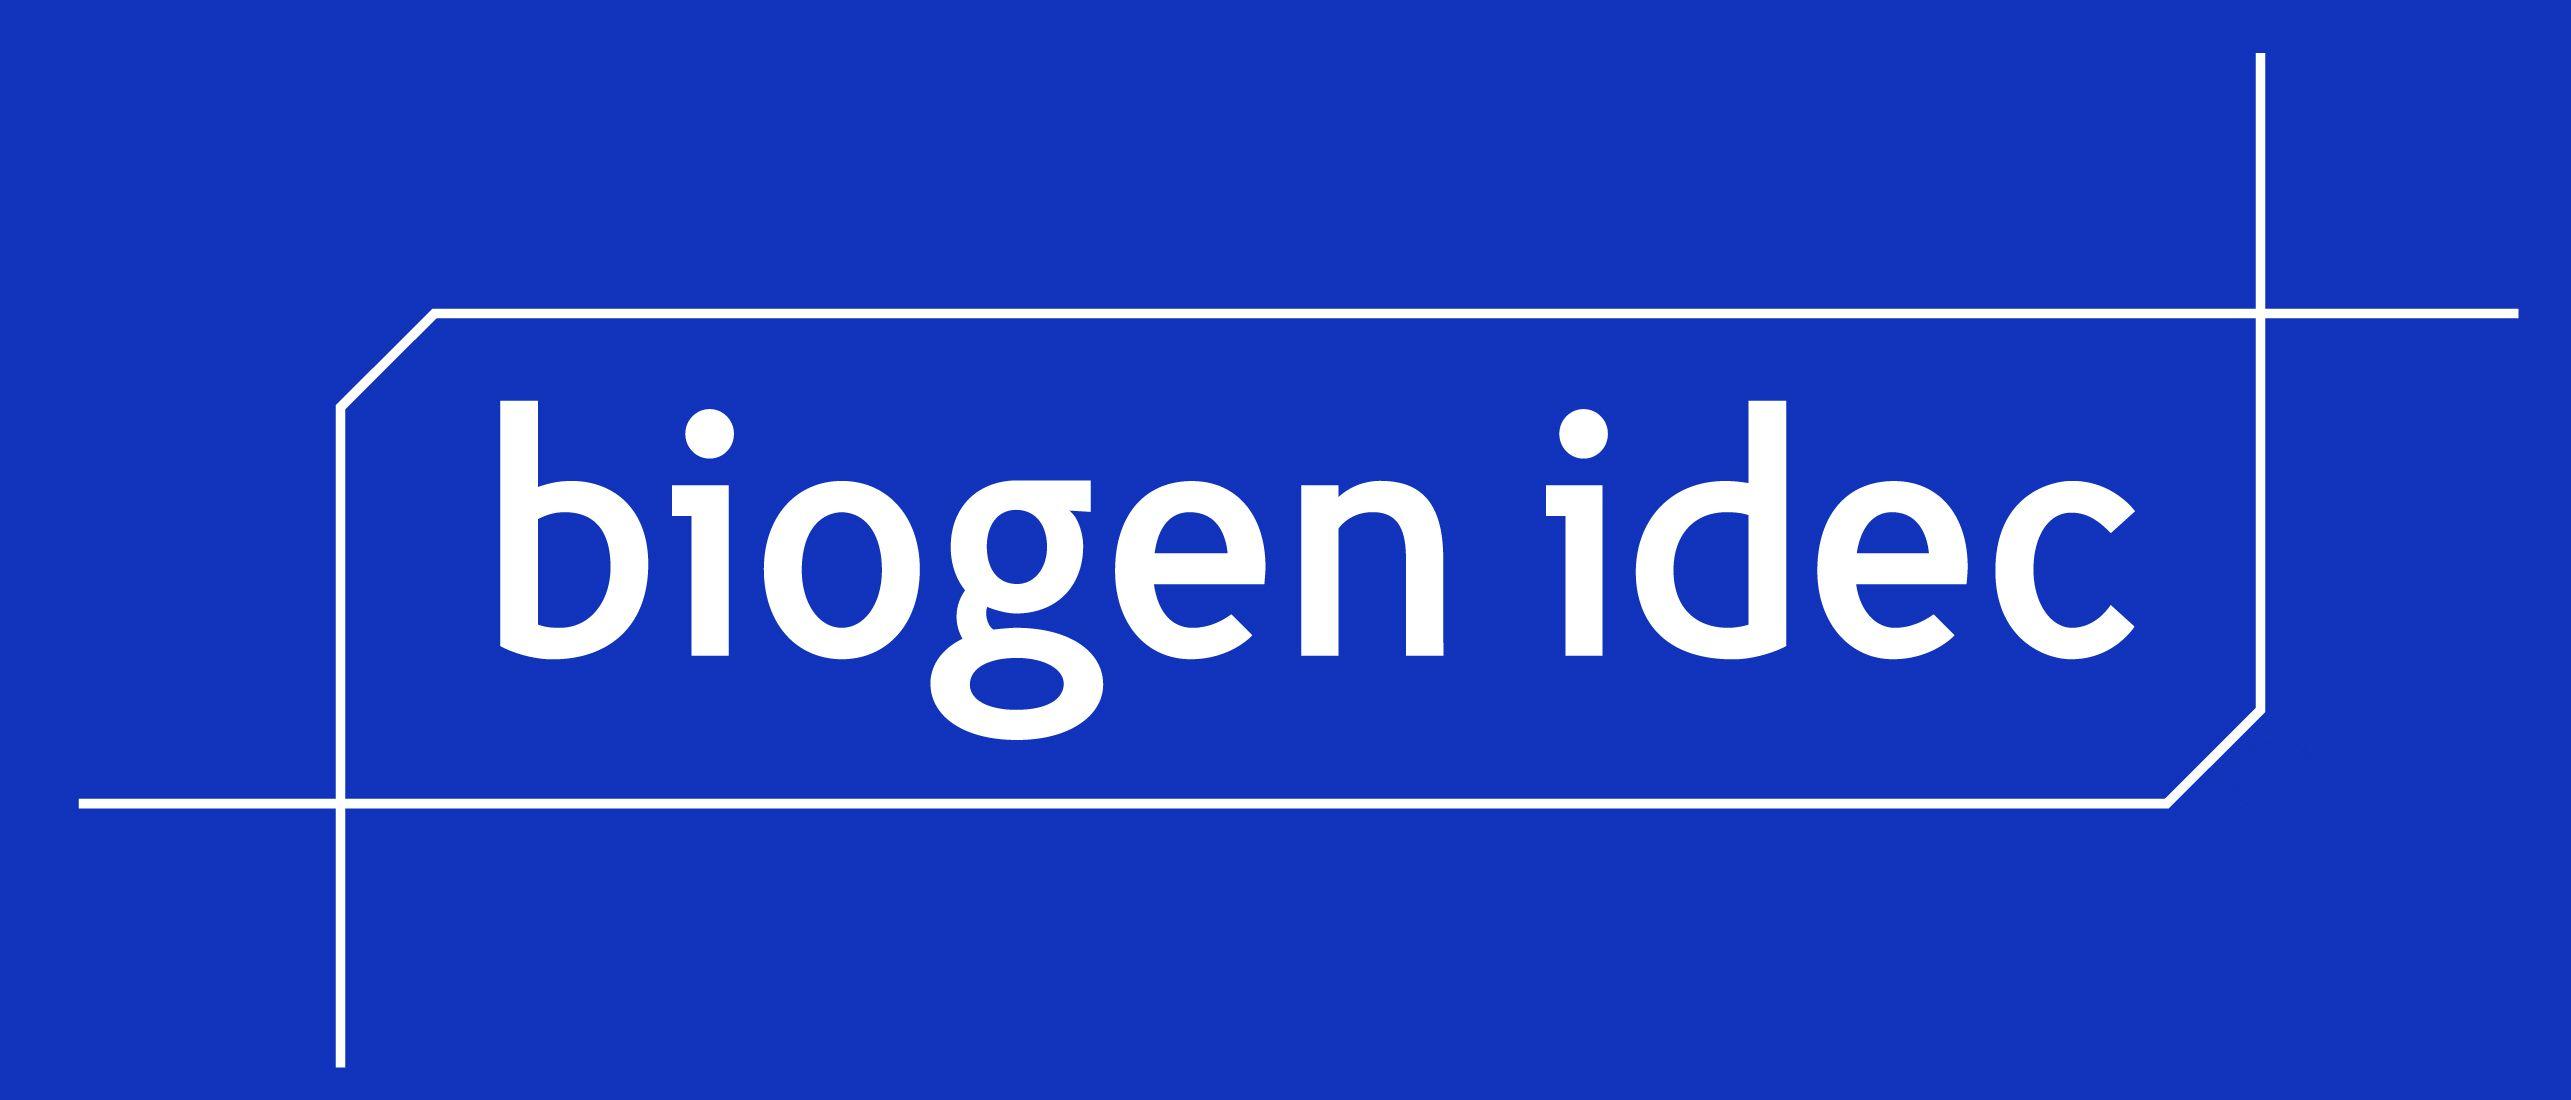 New Biogen Idec Logo - Biogen idec Logos